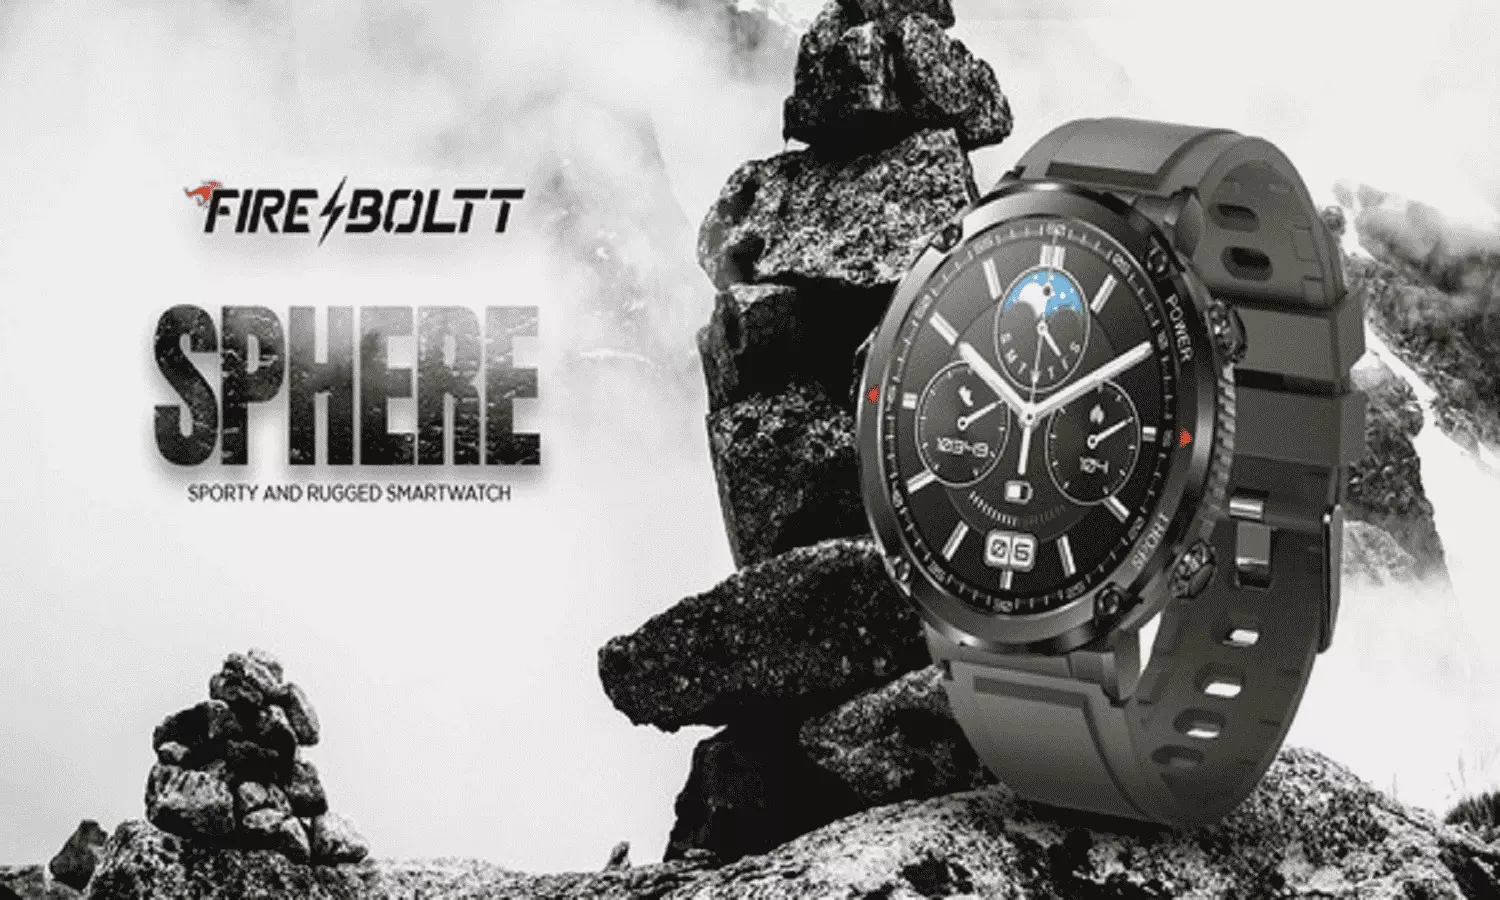 Fire-Boltt Sphere Smartwatch Launch